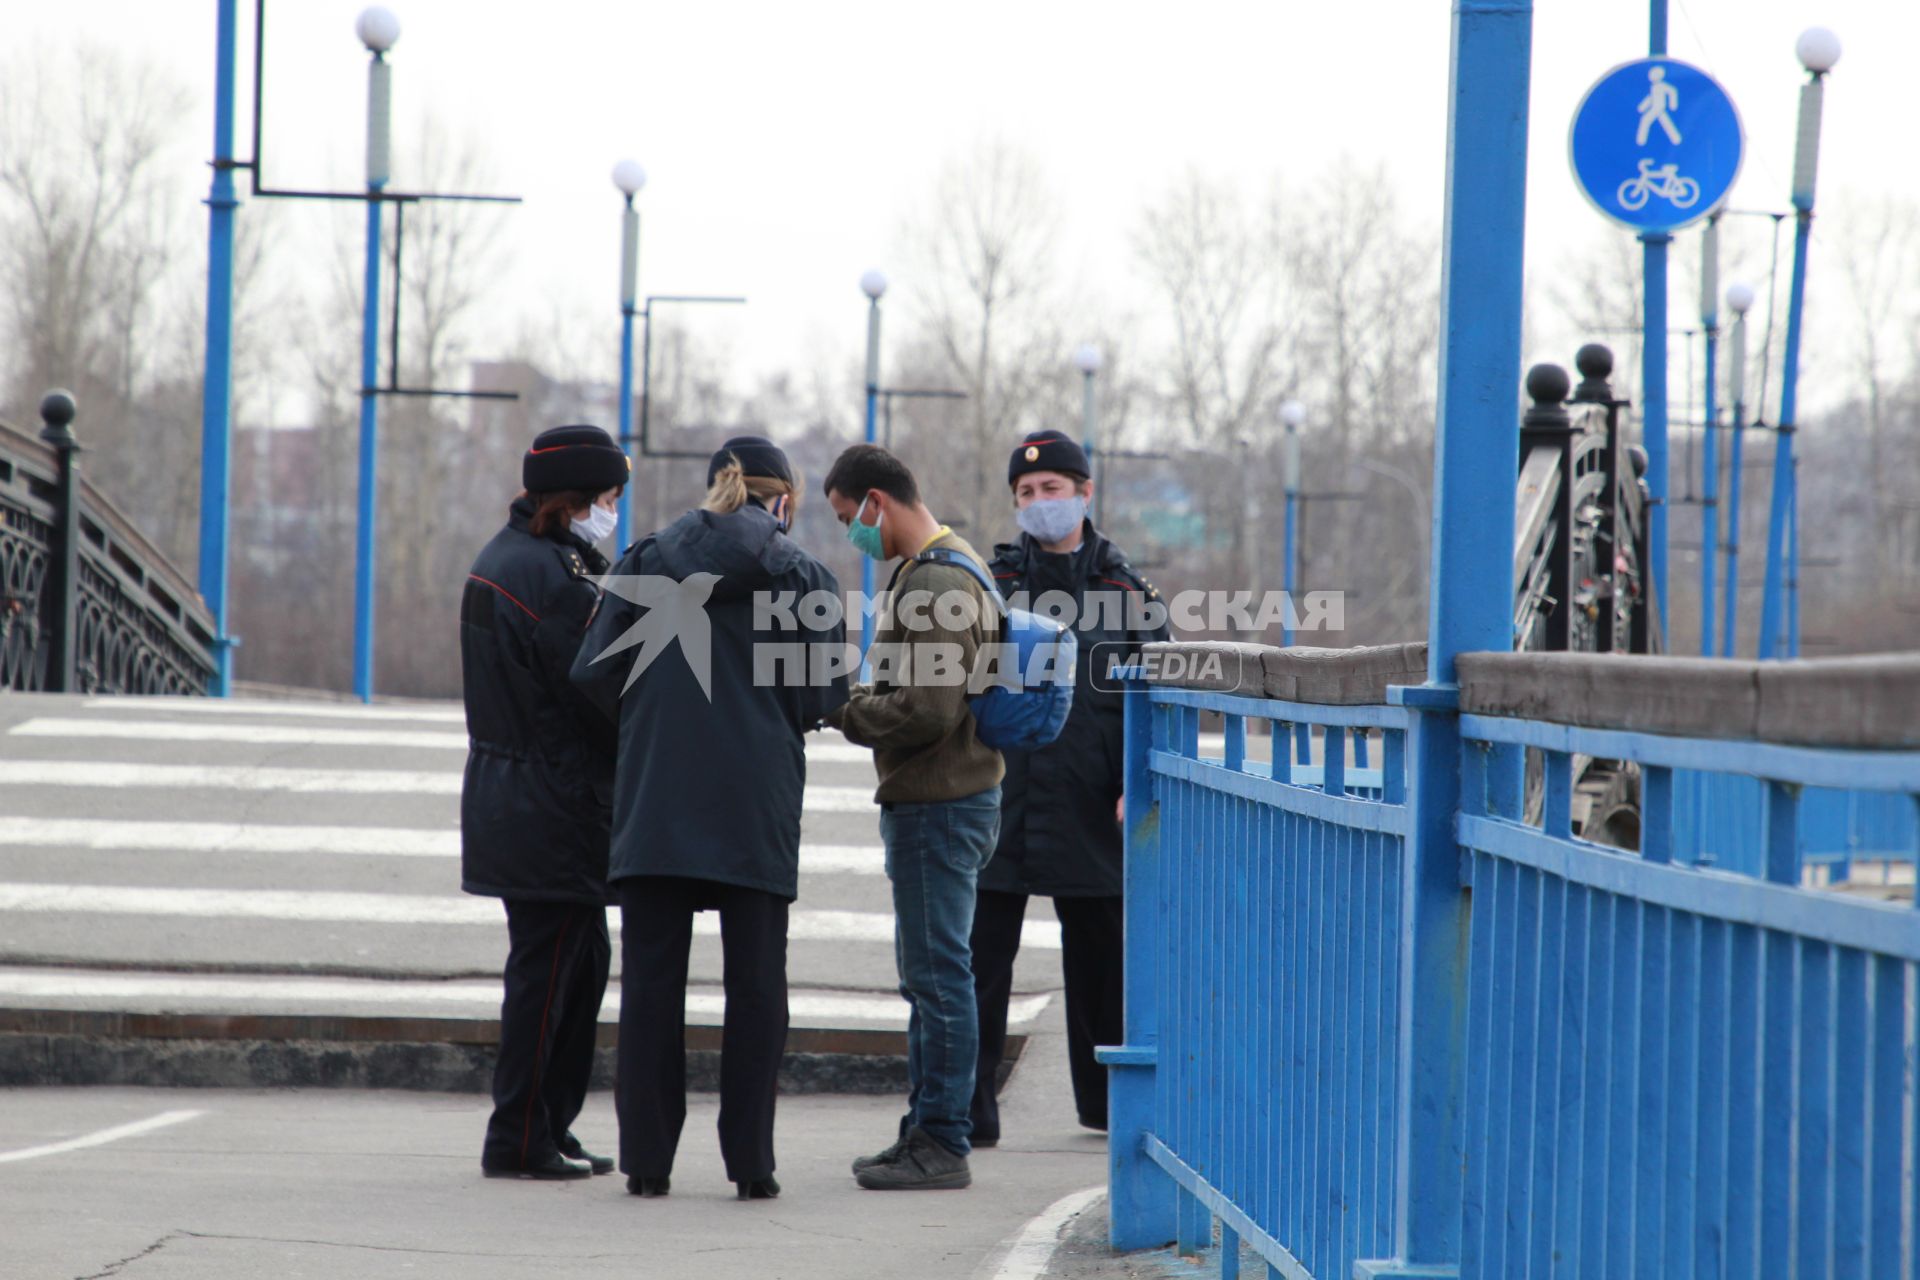 Иркутск.  Полицейские проверяют документы у прохожих на улице.